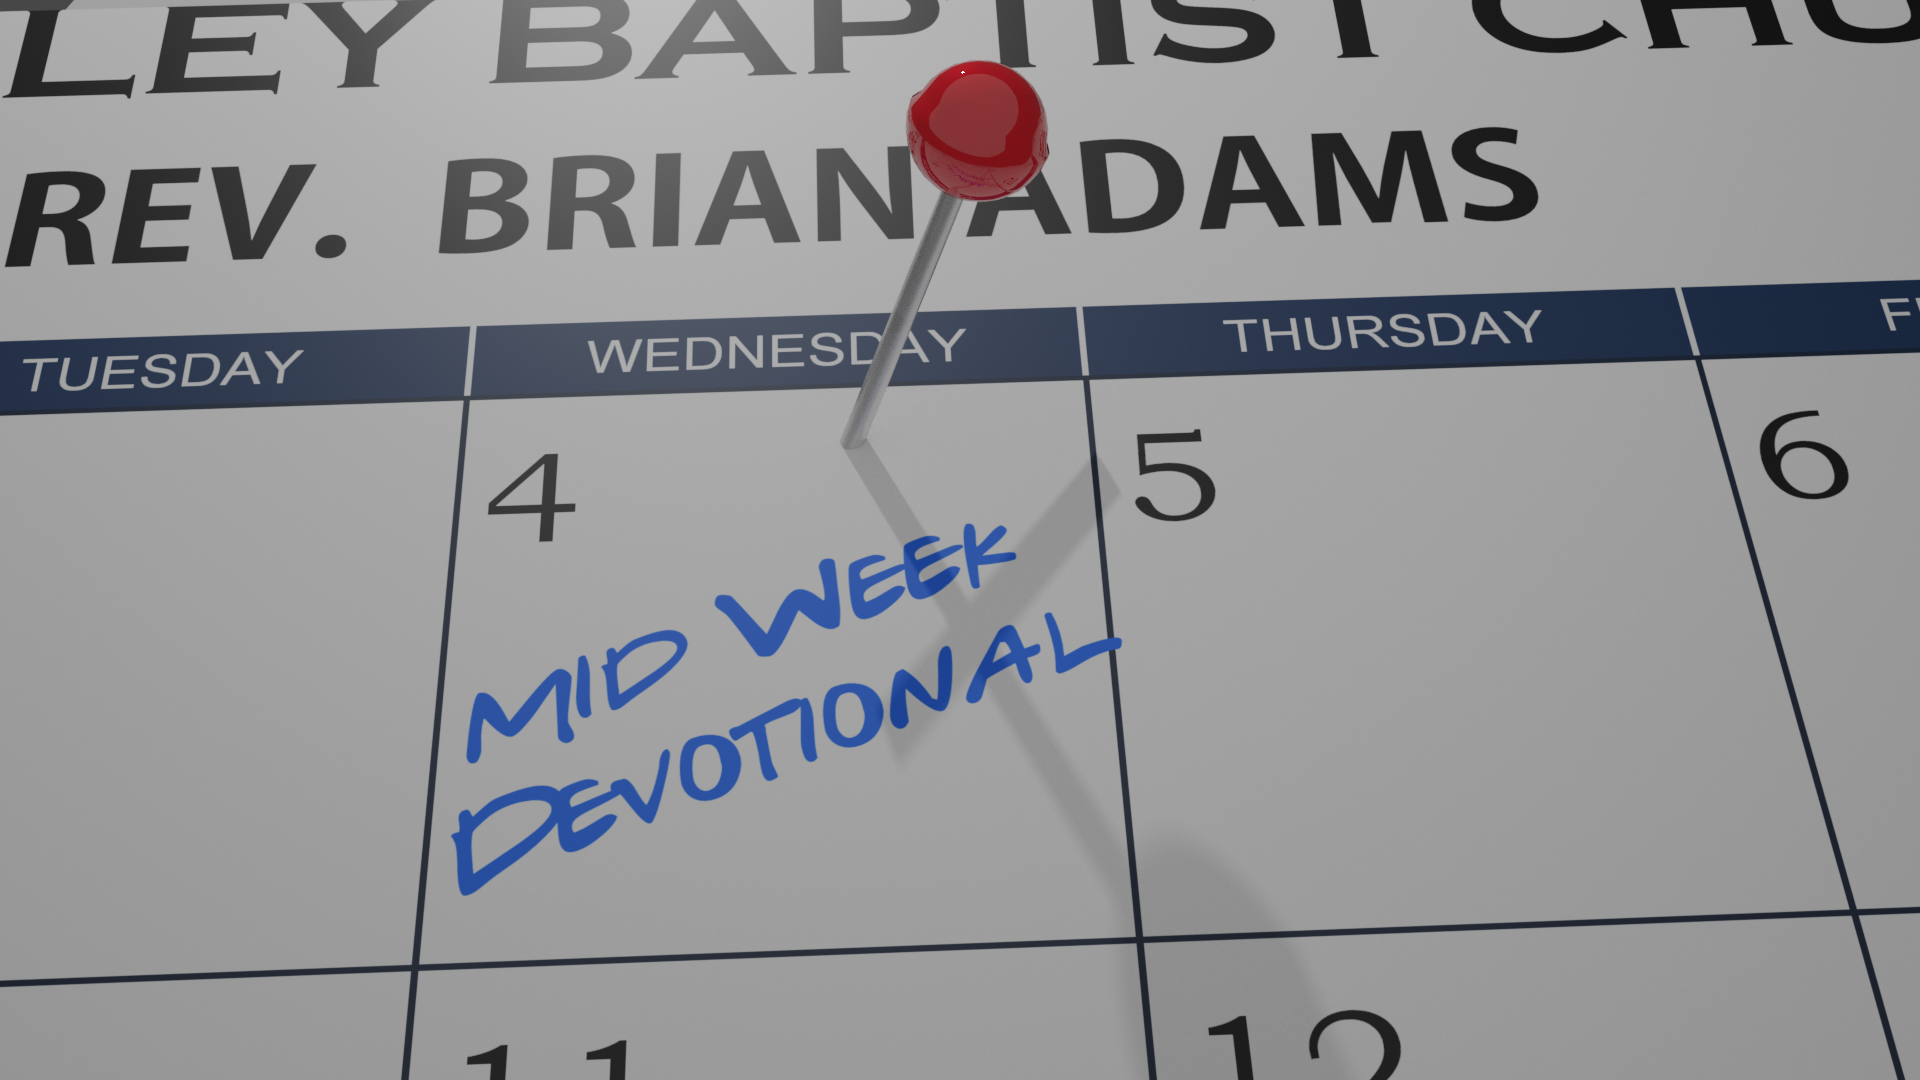 Mid-Week Devotional 1/06/21